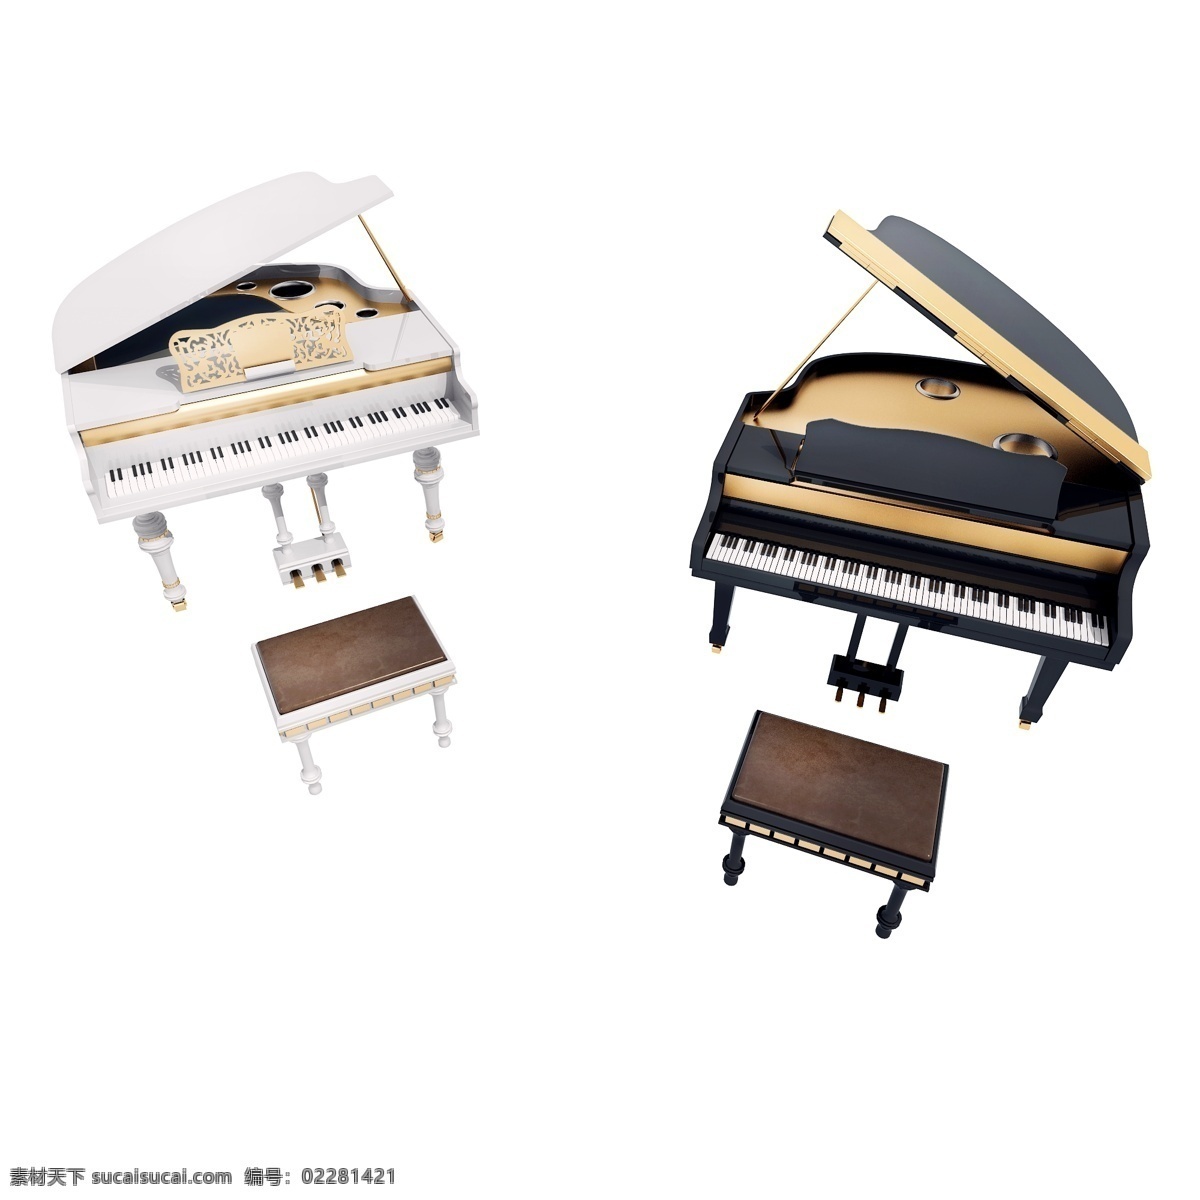 仿真 质感 钢琴 图 立体 精致 镀金 黑色钢琴 白色钢琴 钢琴椅 3d 创意 套图 png图 音乐 乐器